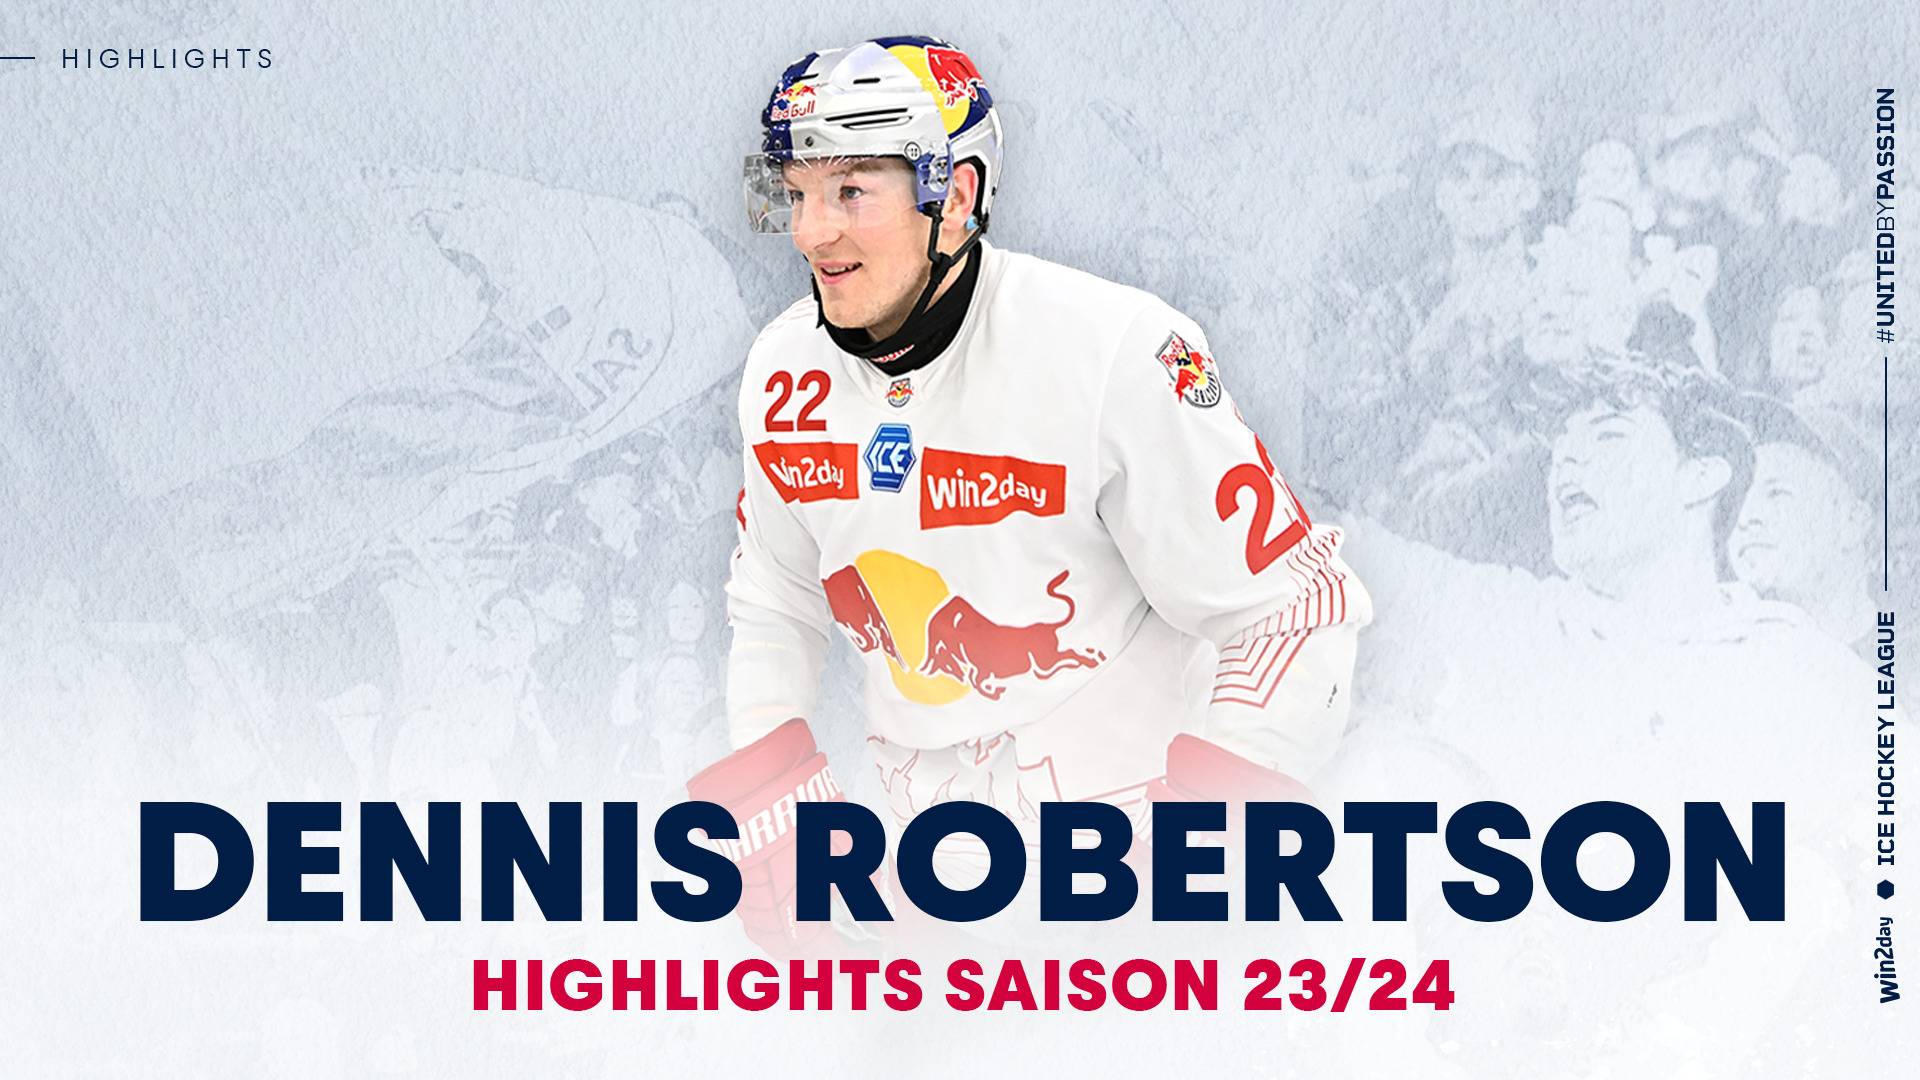 Dennis Robertson: Die Highlights aus der Saison 23/24